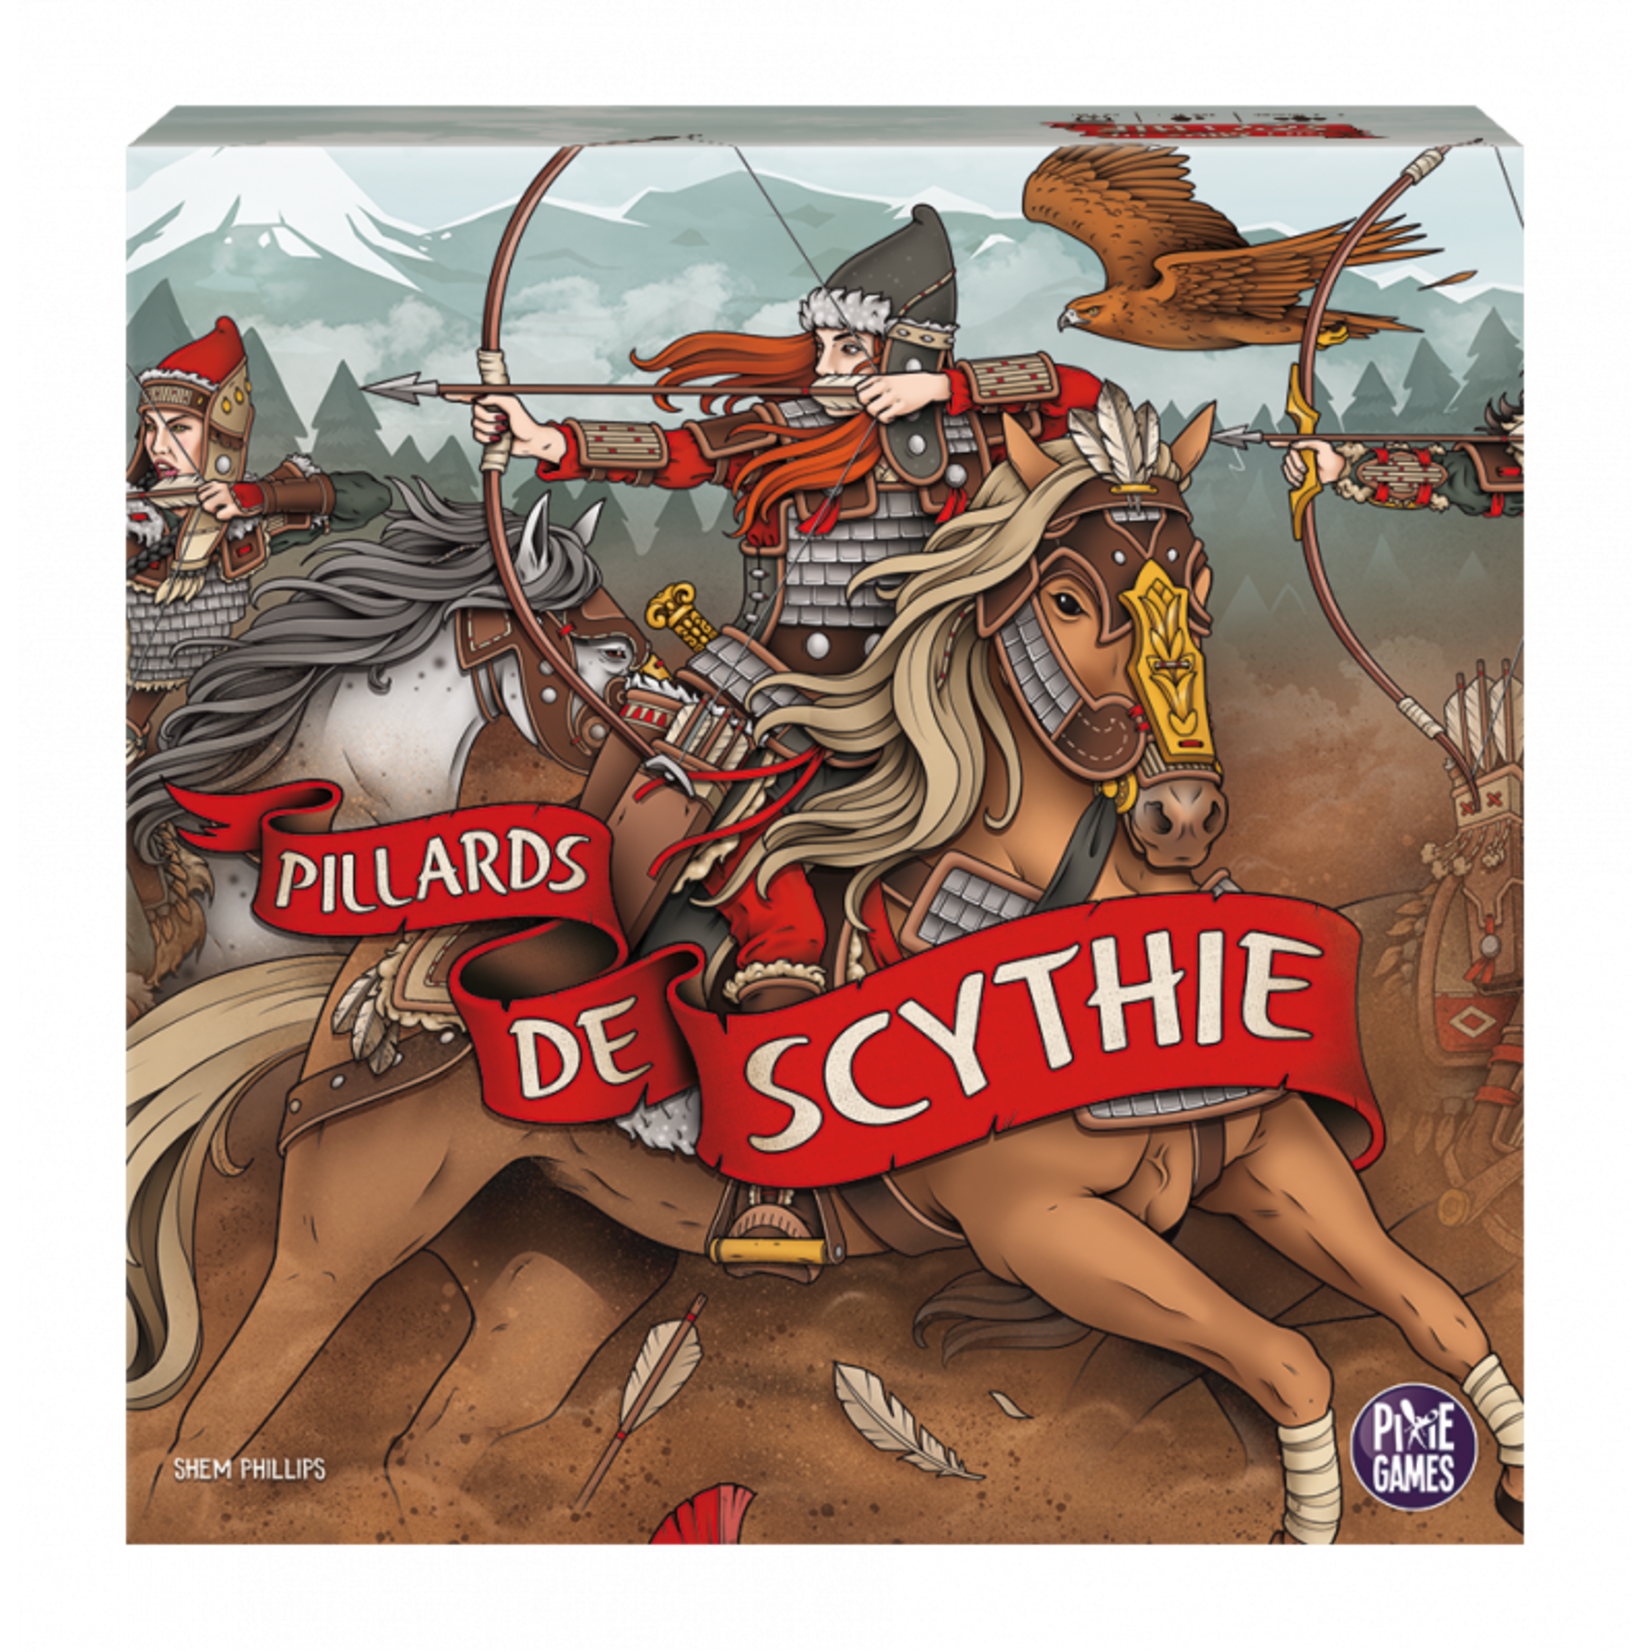 Pixie Games Pillards de Scythie